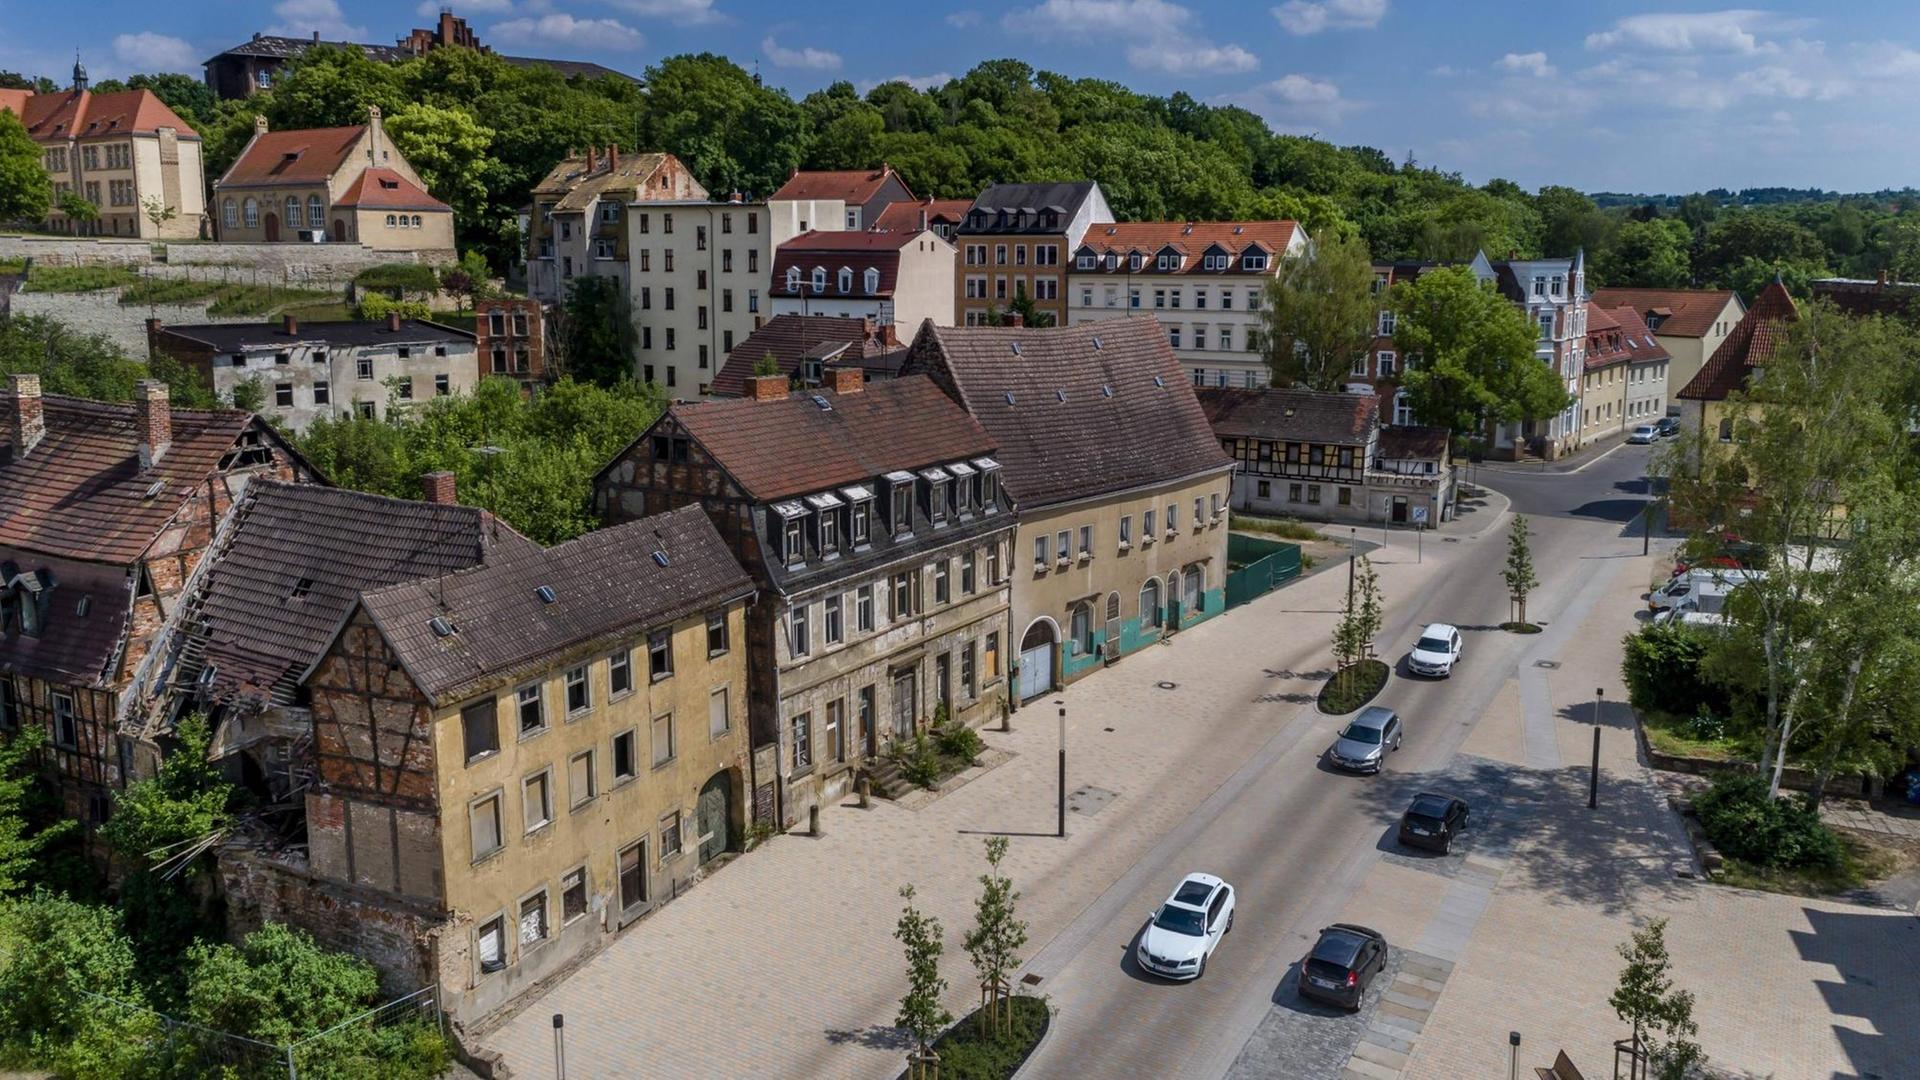 Der Brühl, der älteste Stadtteil von Zeitz: Dom- und Residenzstadt Zeitz liegt im Burgenlandkreis im Süden von Sachsen-Anhalt. Die Stadt an der Weißen Elster hat eine lebhafte Geschichte.